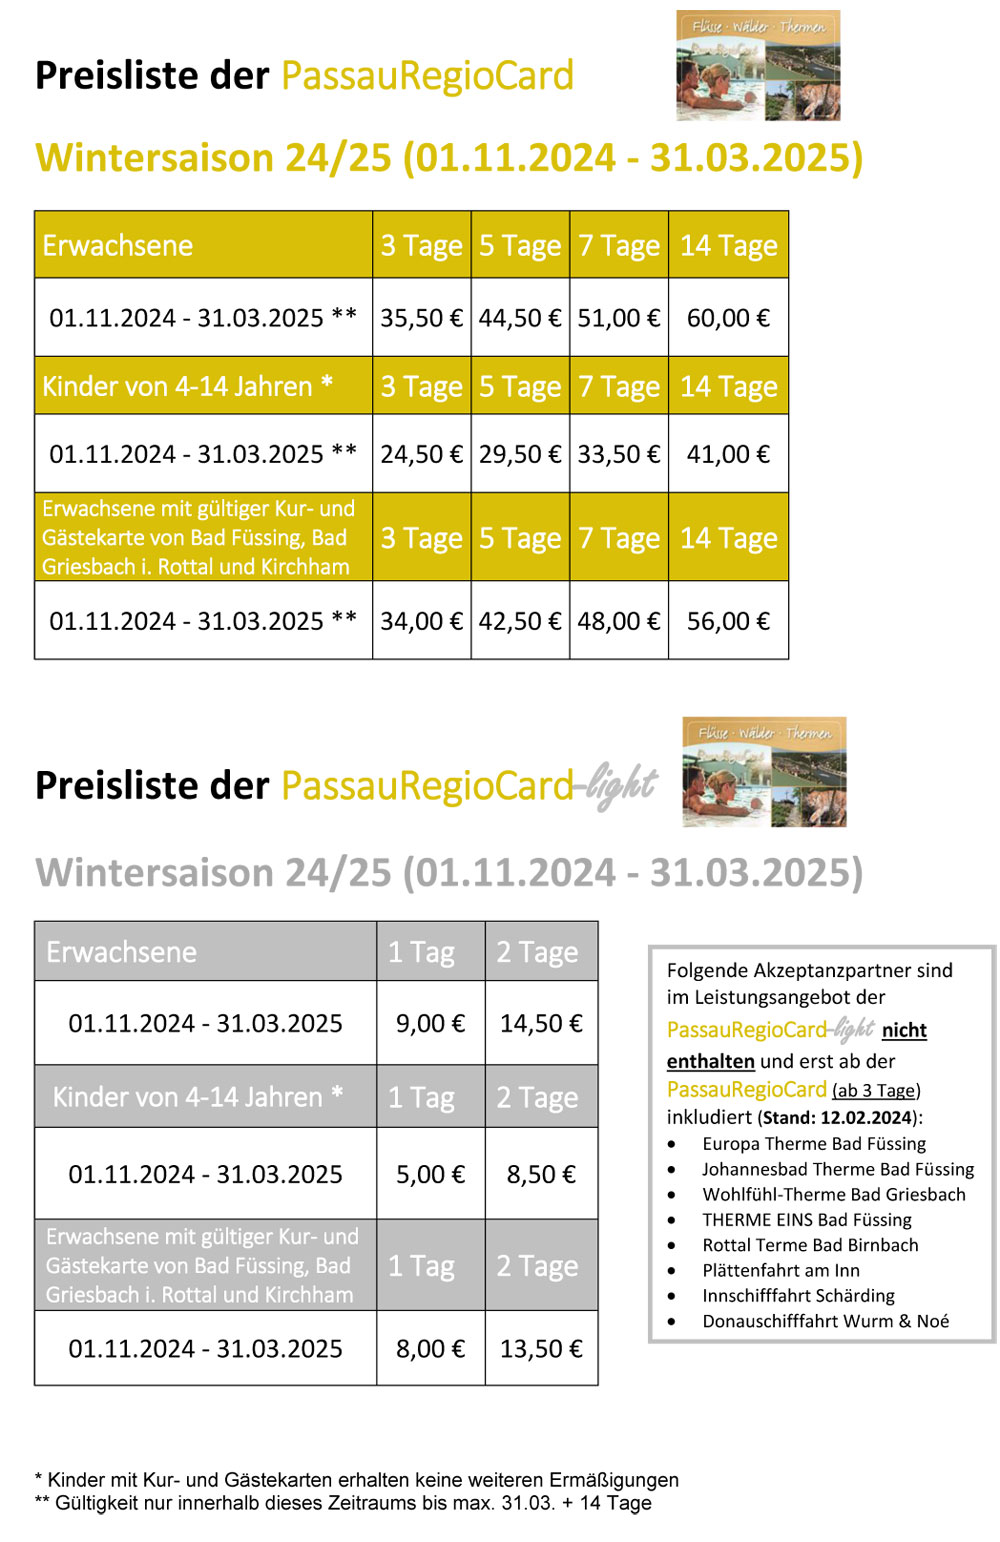 Preisliste PaReCa Wintersaison 0111 2023 